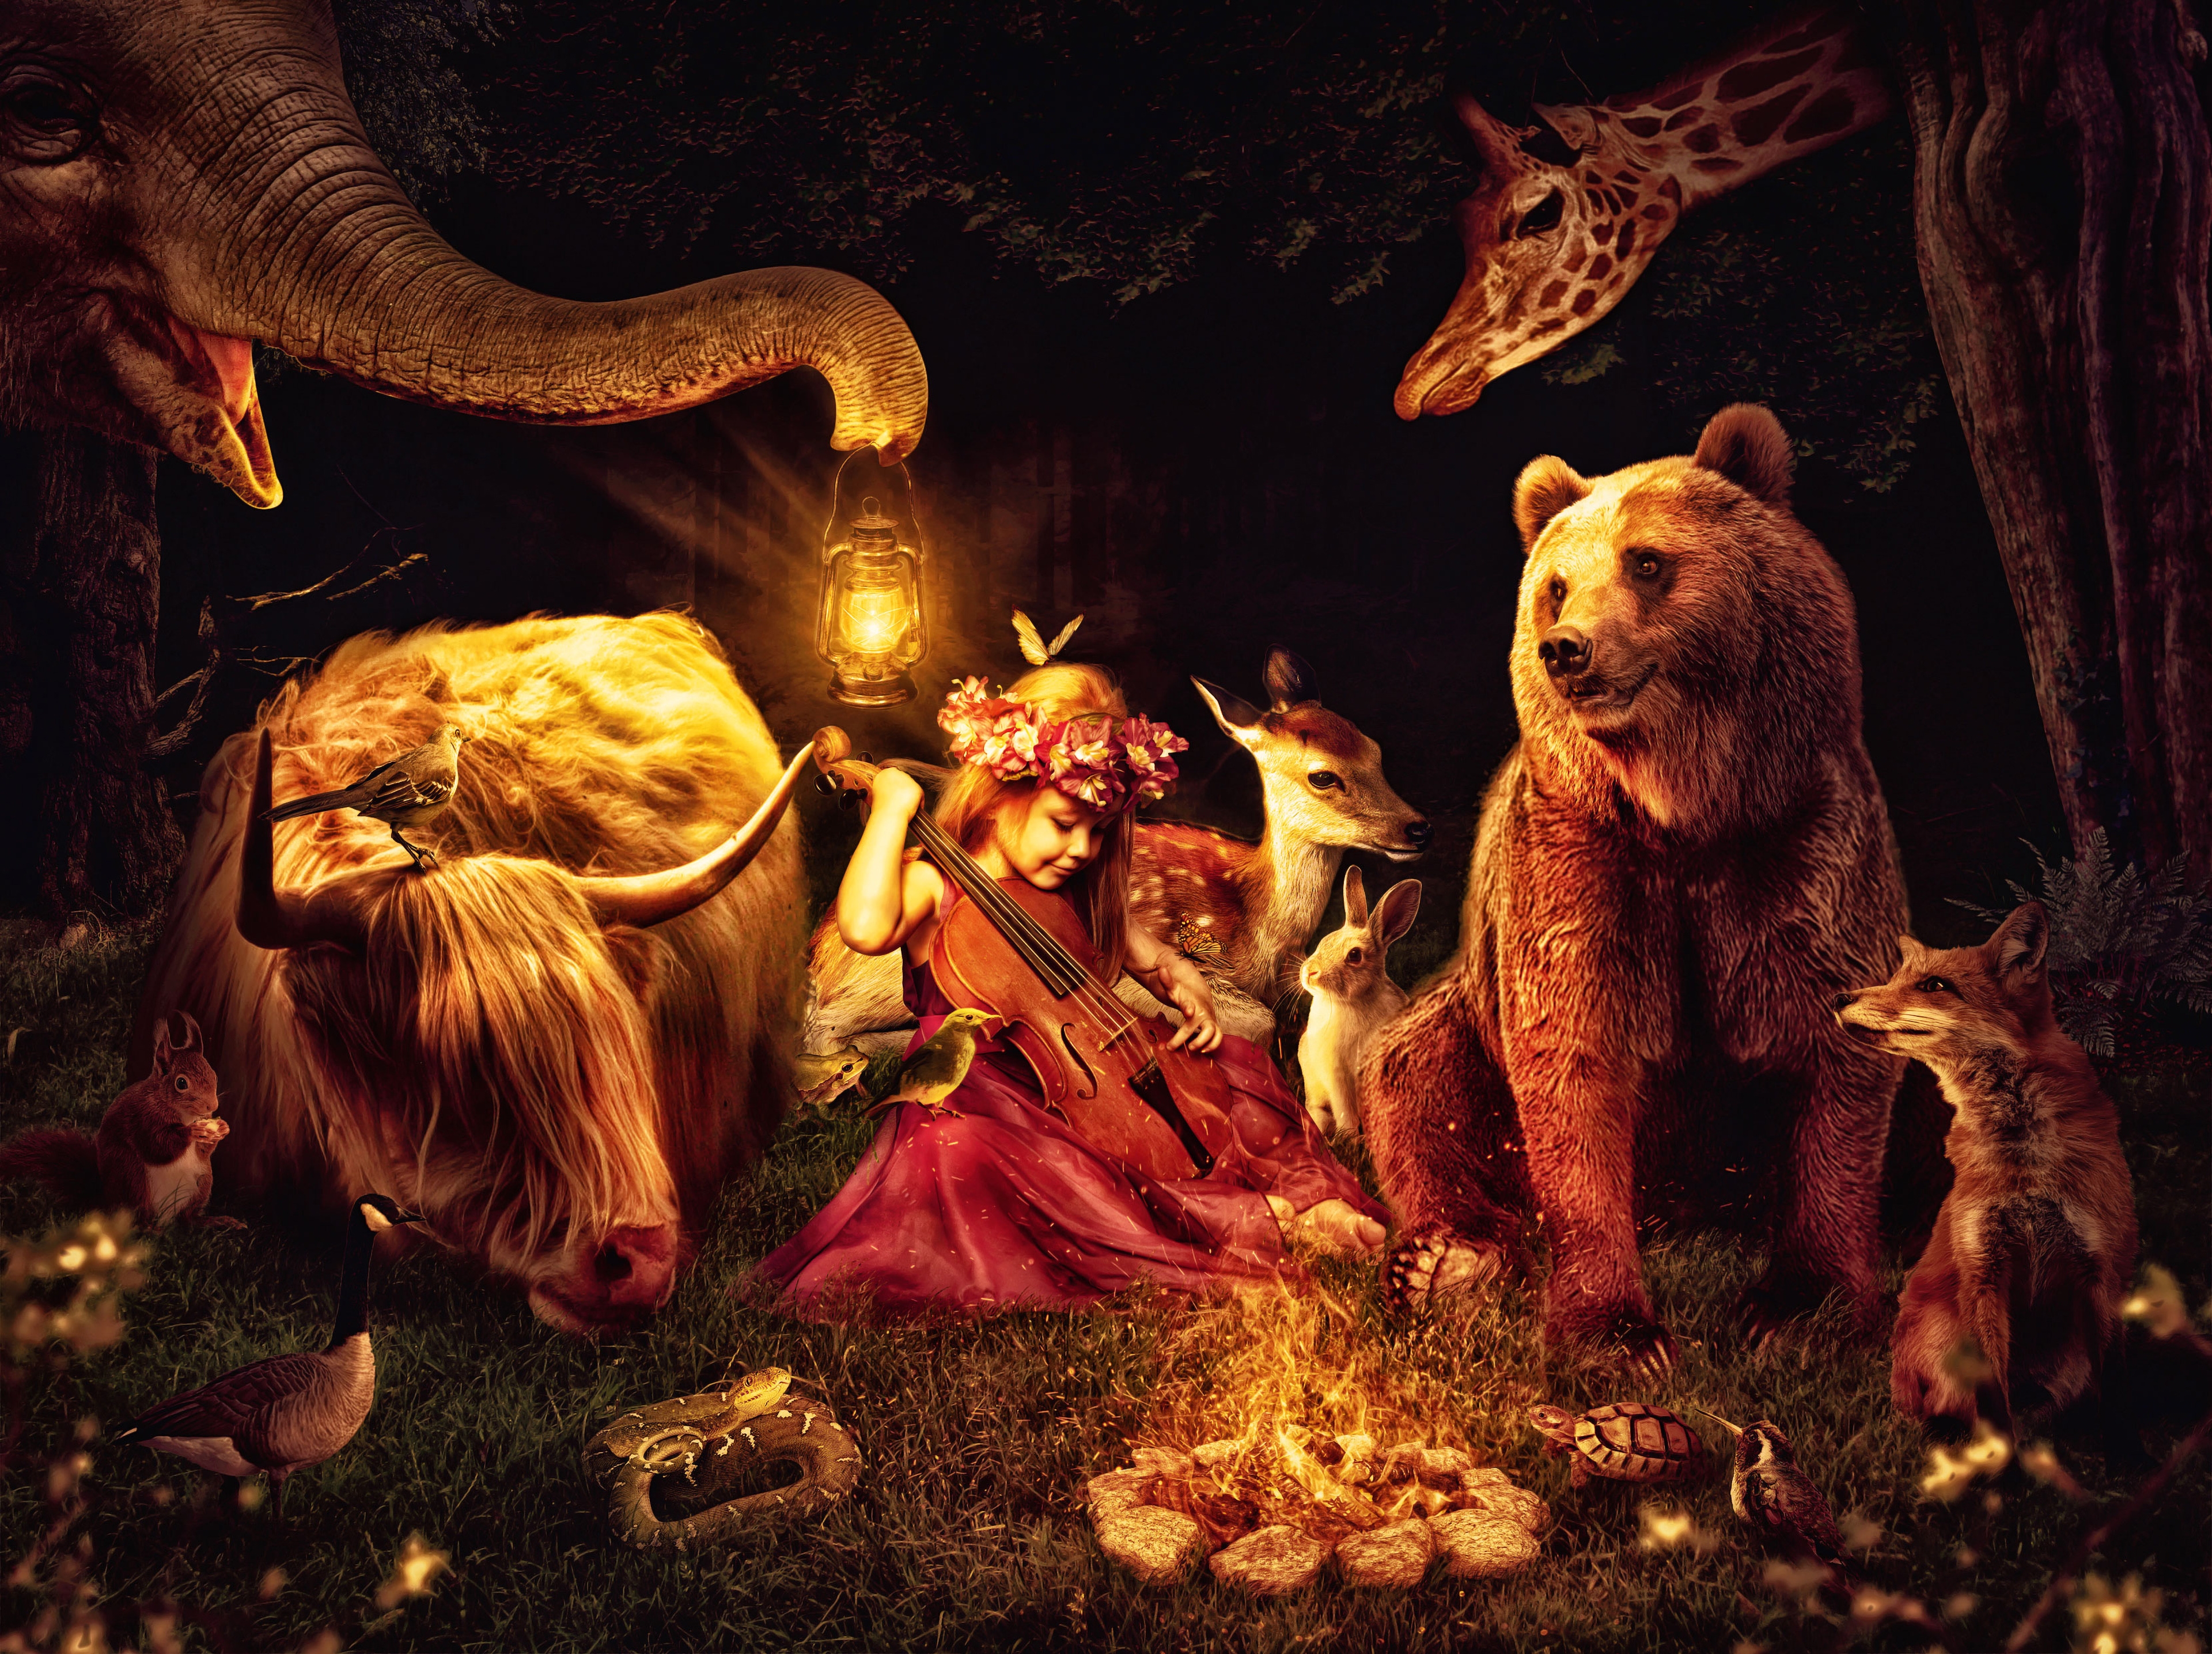 HD wallpaper, Surreal, Fox, Dream, Little Girl, Bear, Giraffe, Rabbit, Forest, Midnight, Deer, Playing Violin